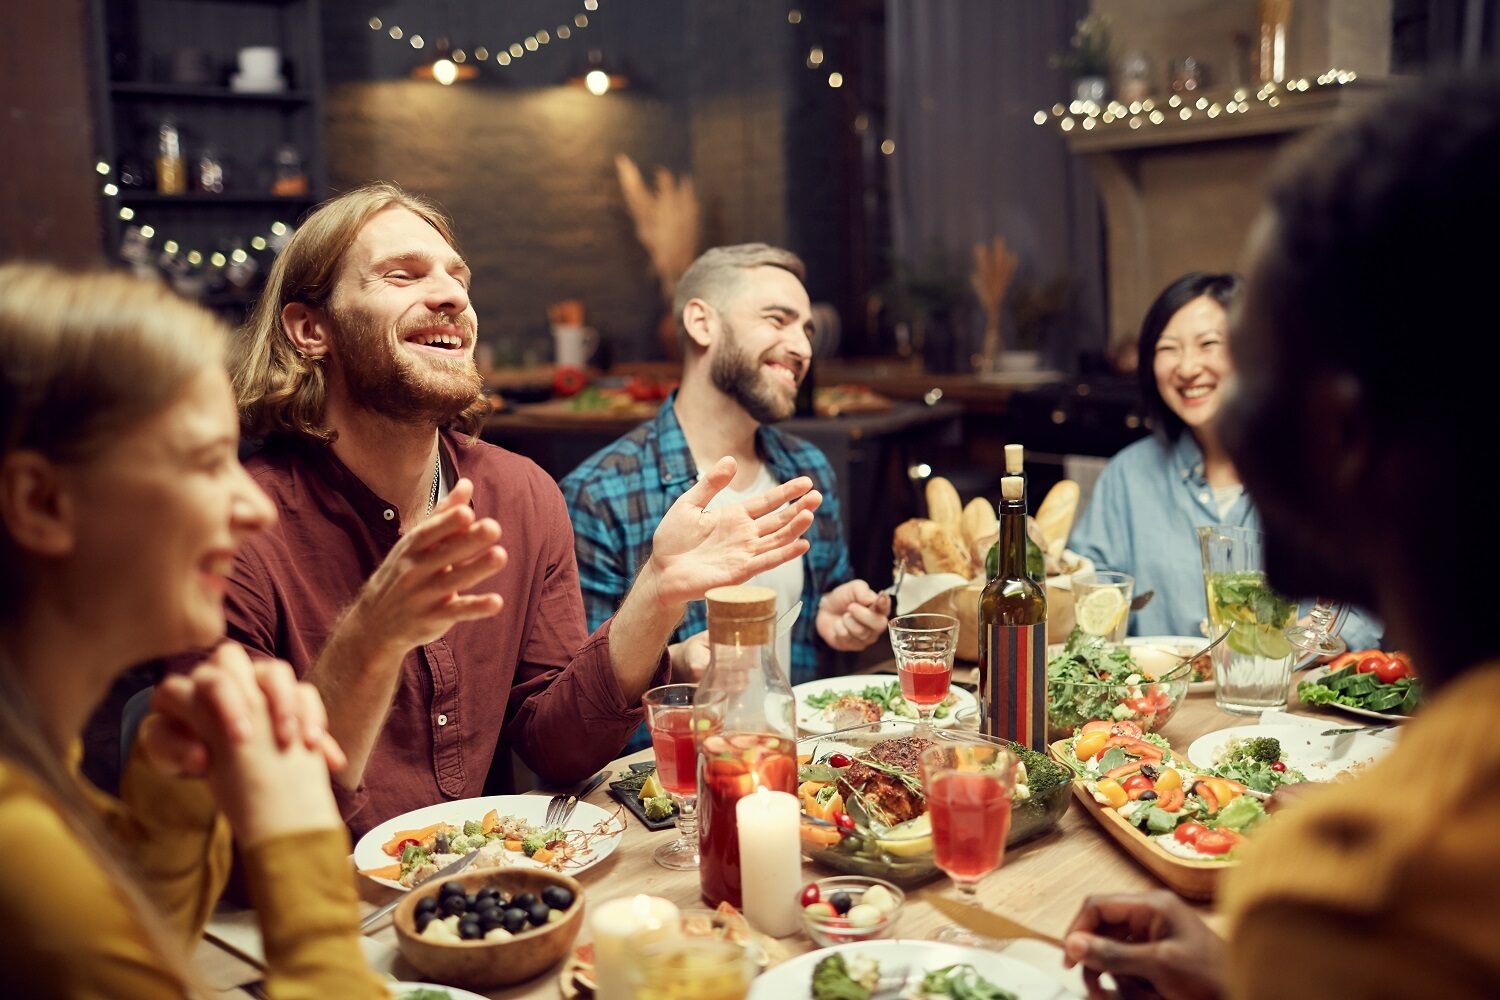 grup de tineri adunati in jurul mesei, razand fericiti, intr-o camera cu lumina redusa, imagine reprezentativa pentru mâncare pentru o seară cu prietenii